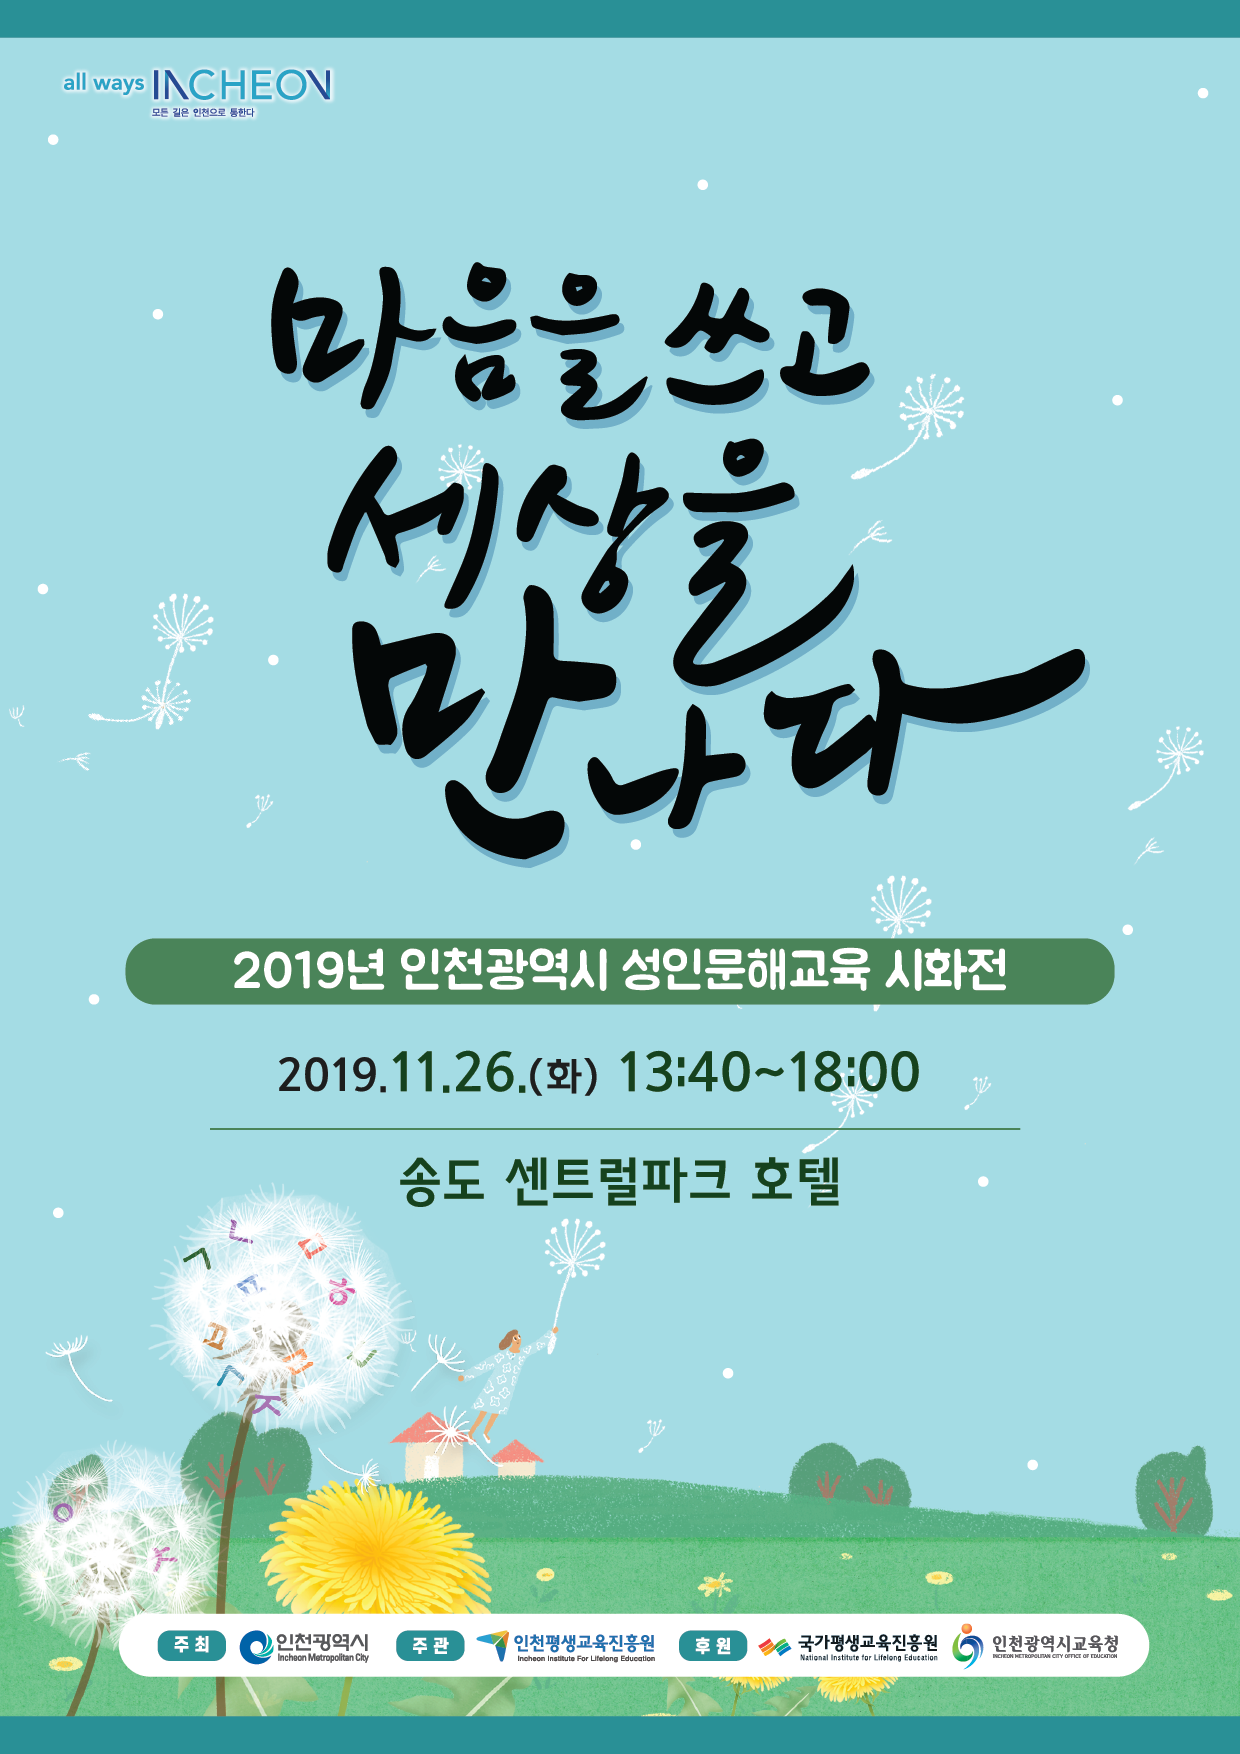 2019 인천 평생학습 실천대회 개최 안내의 2번째 이미지